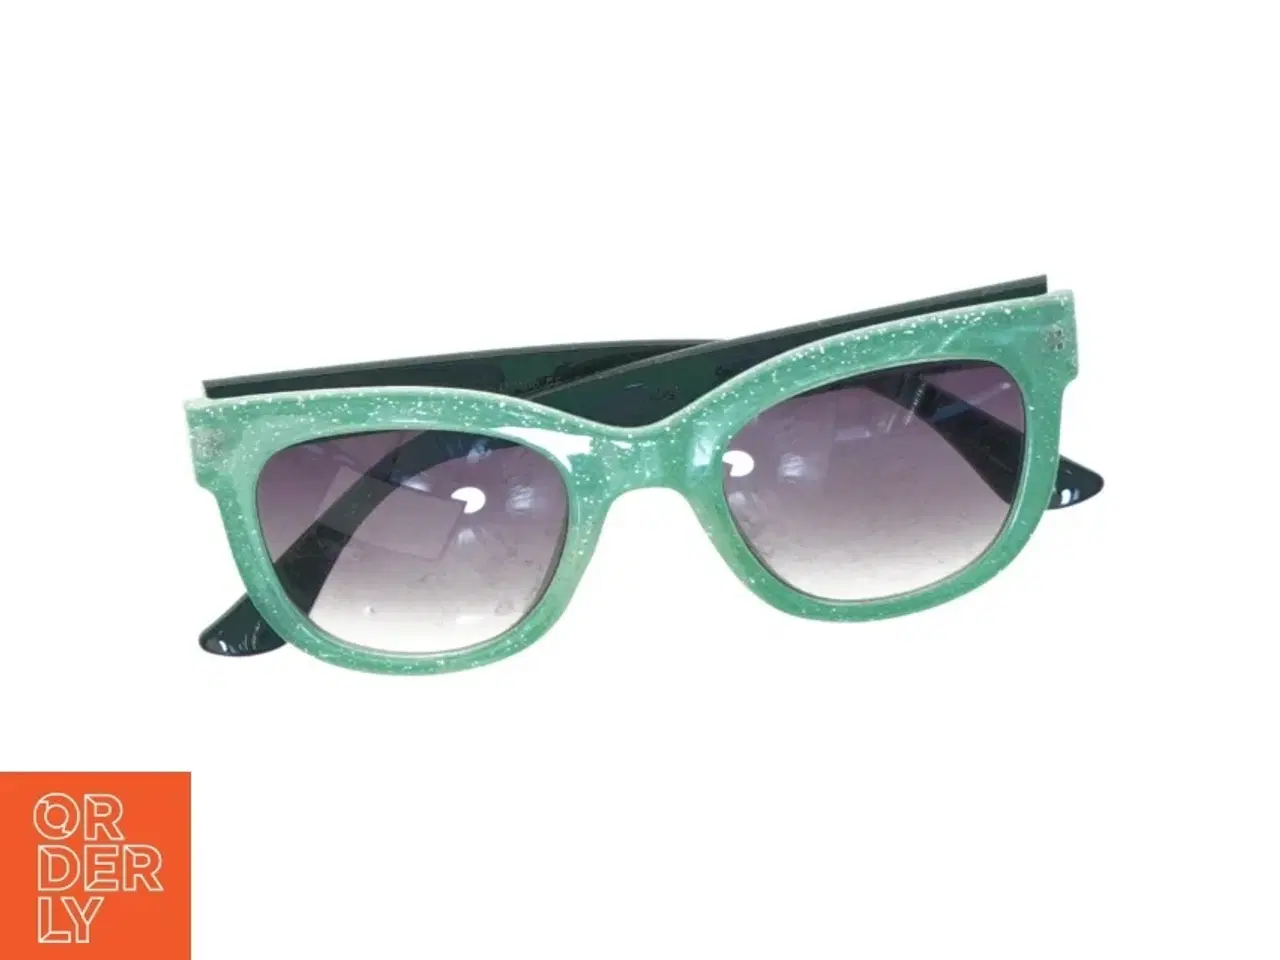 Billede 1 - Grønne solbriller (str. 14 x 5 cm)